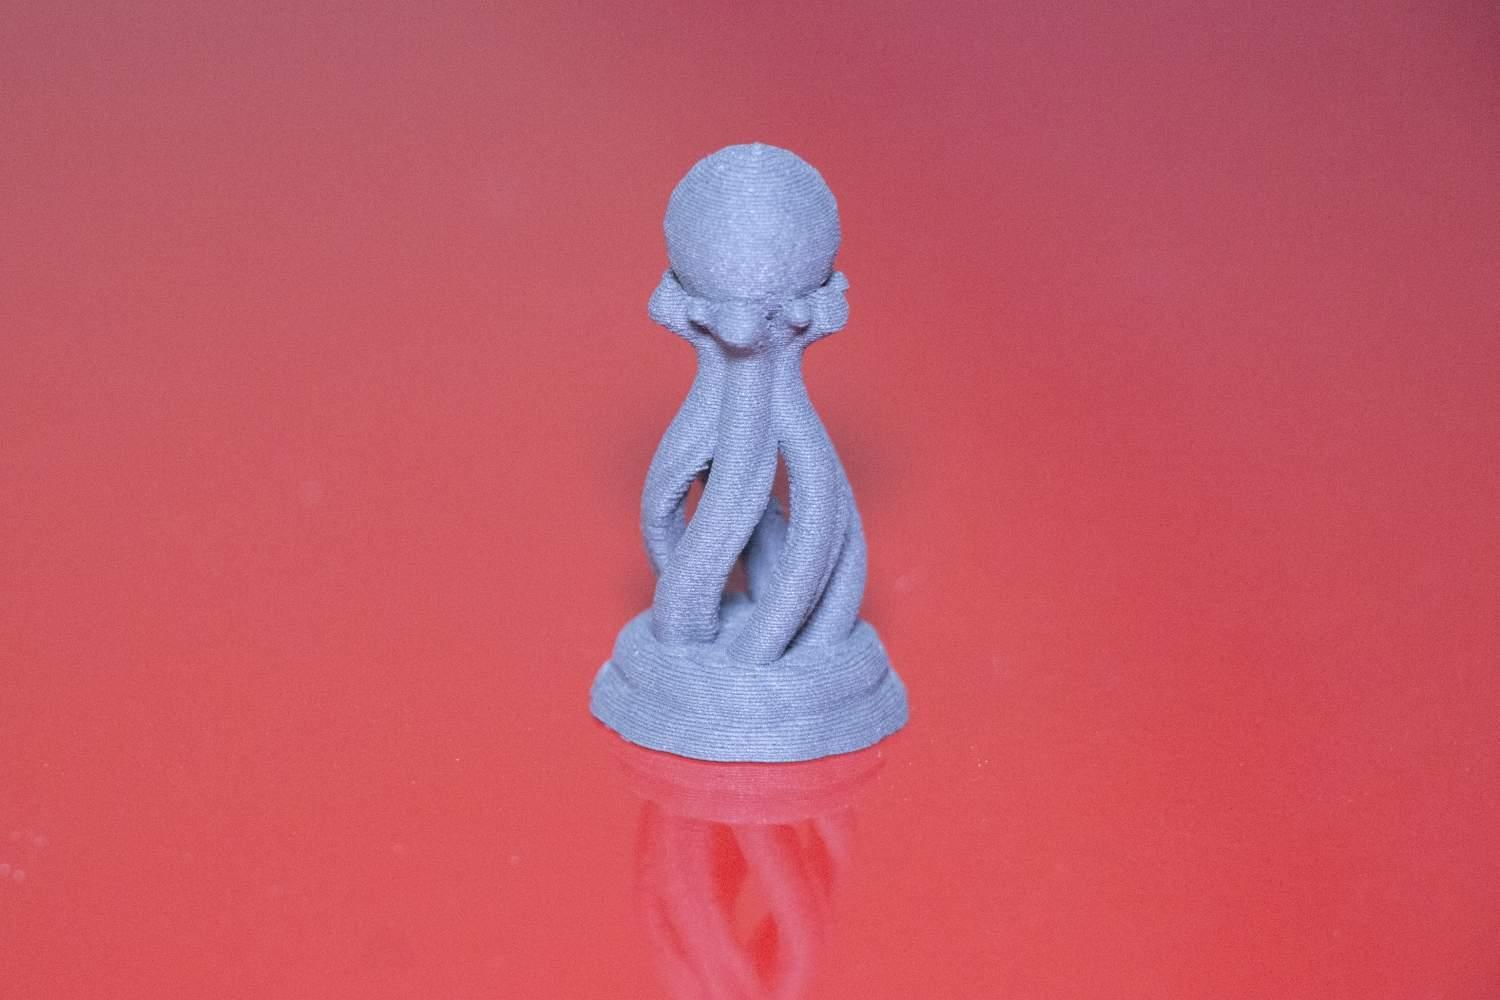 Chess Set // VR Sculpt 3d model